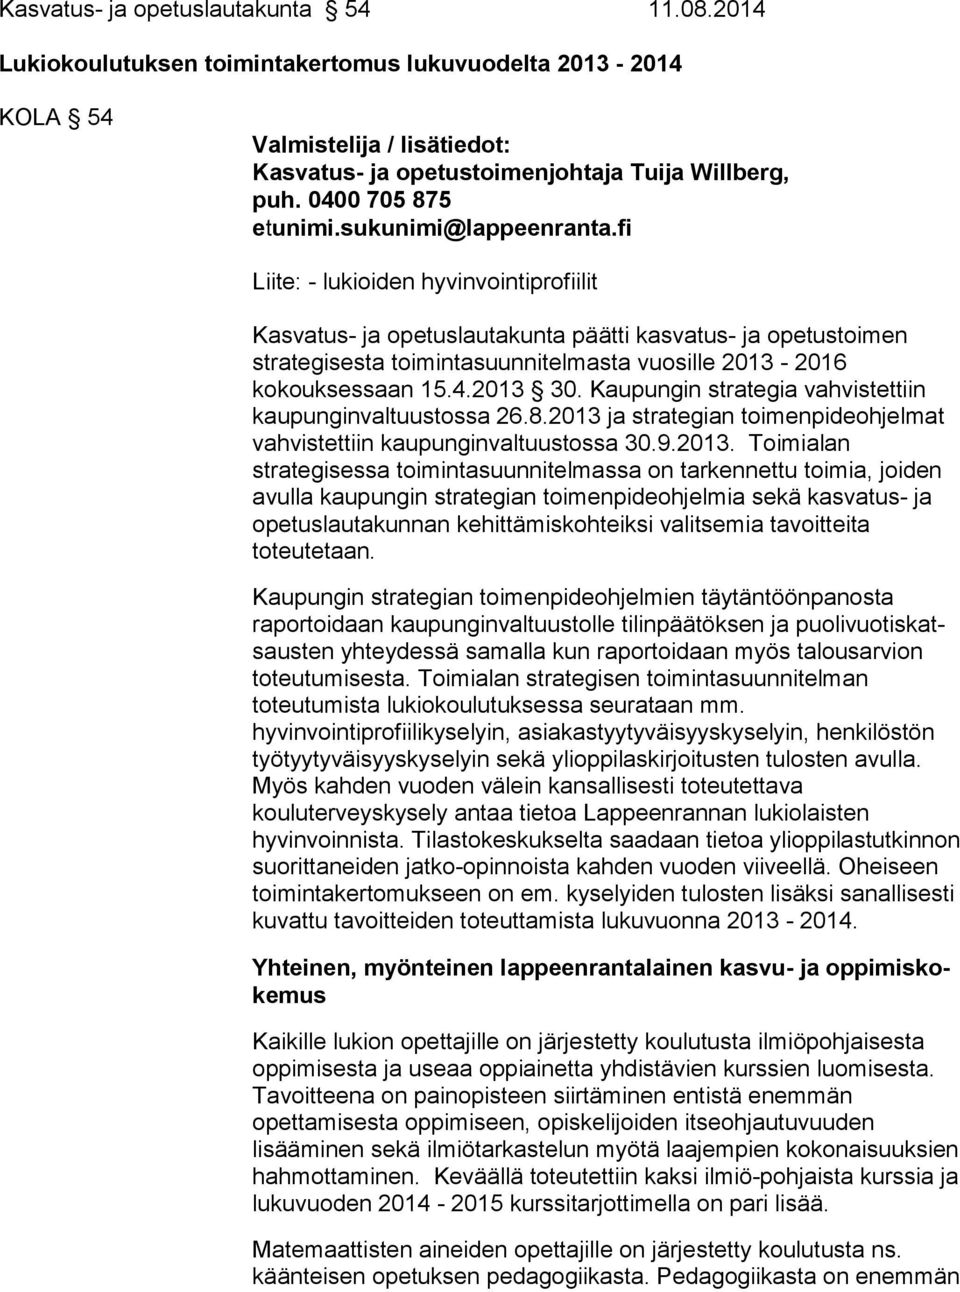 fi Liite: - lukioiden hyvinvointiprofiilit Kasvatus- ja opetuslautakunta päätti kasvatus- ja ope tus toi men strategisesta toimintasuunnitelmasta vuosille 2013-2016 kokouksessaan 15.4.2013 30.